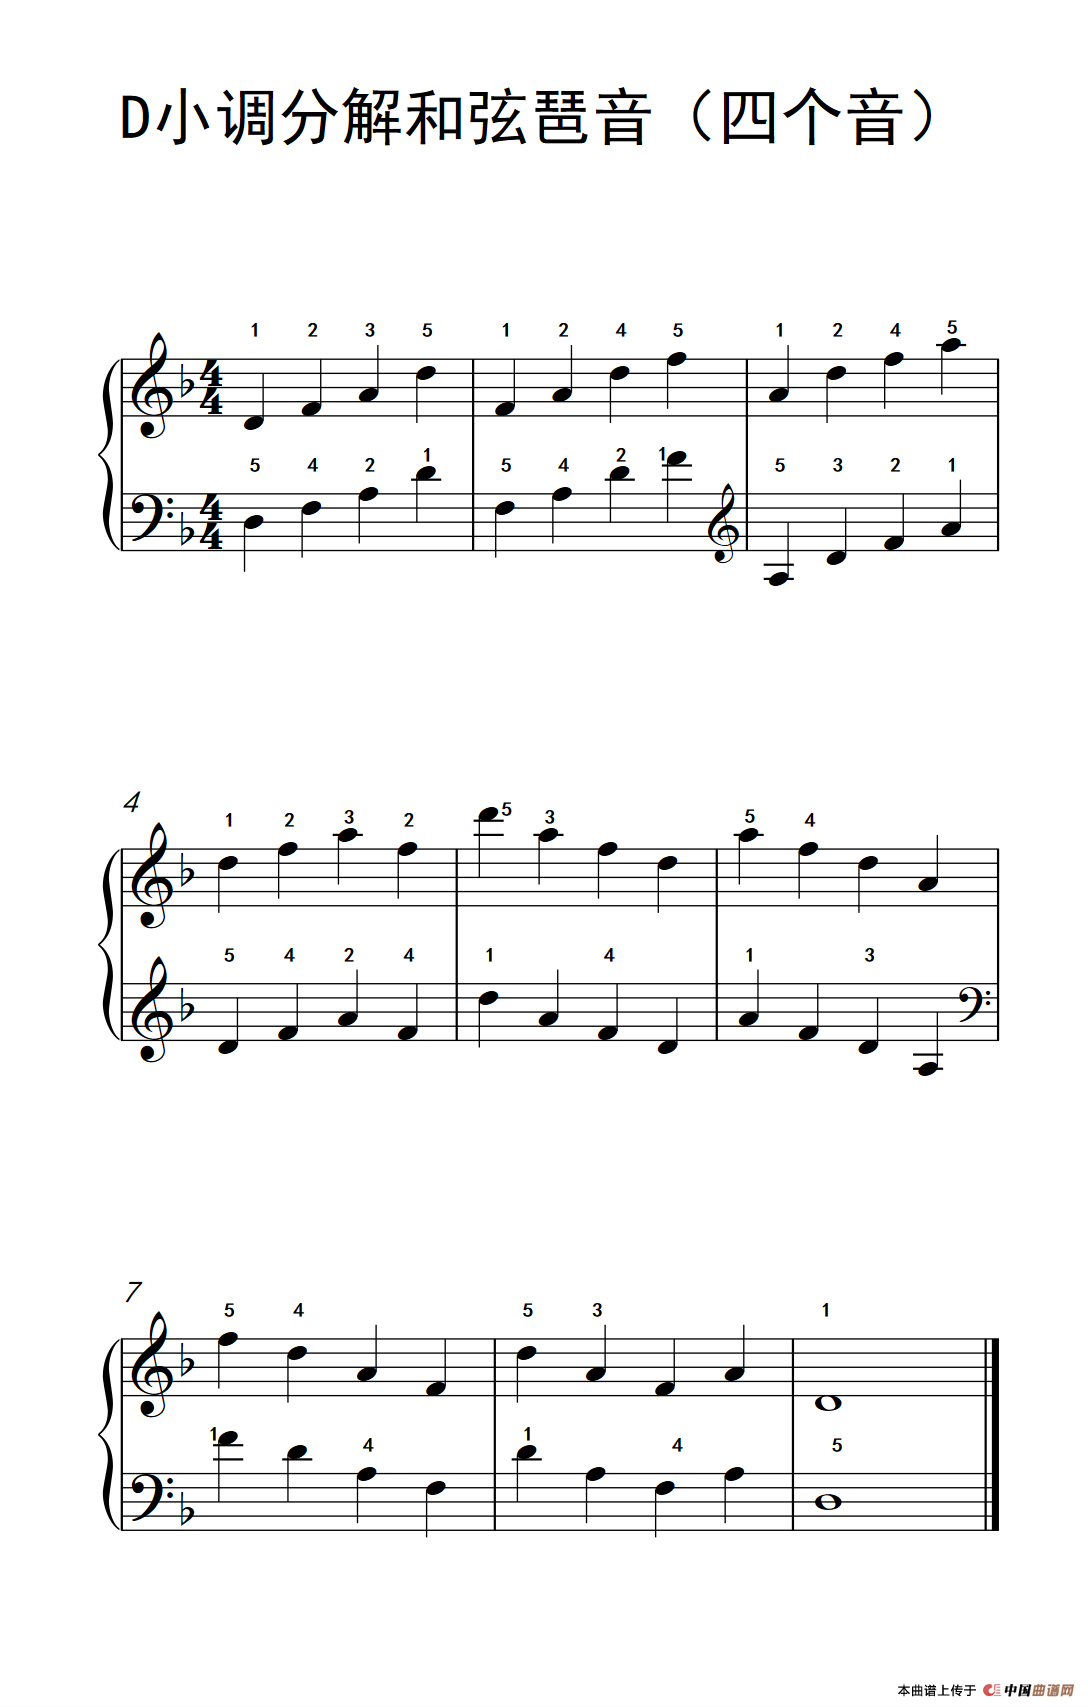 D小调分解和弦琶音（四个音）（儿童钢琴练习曲